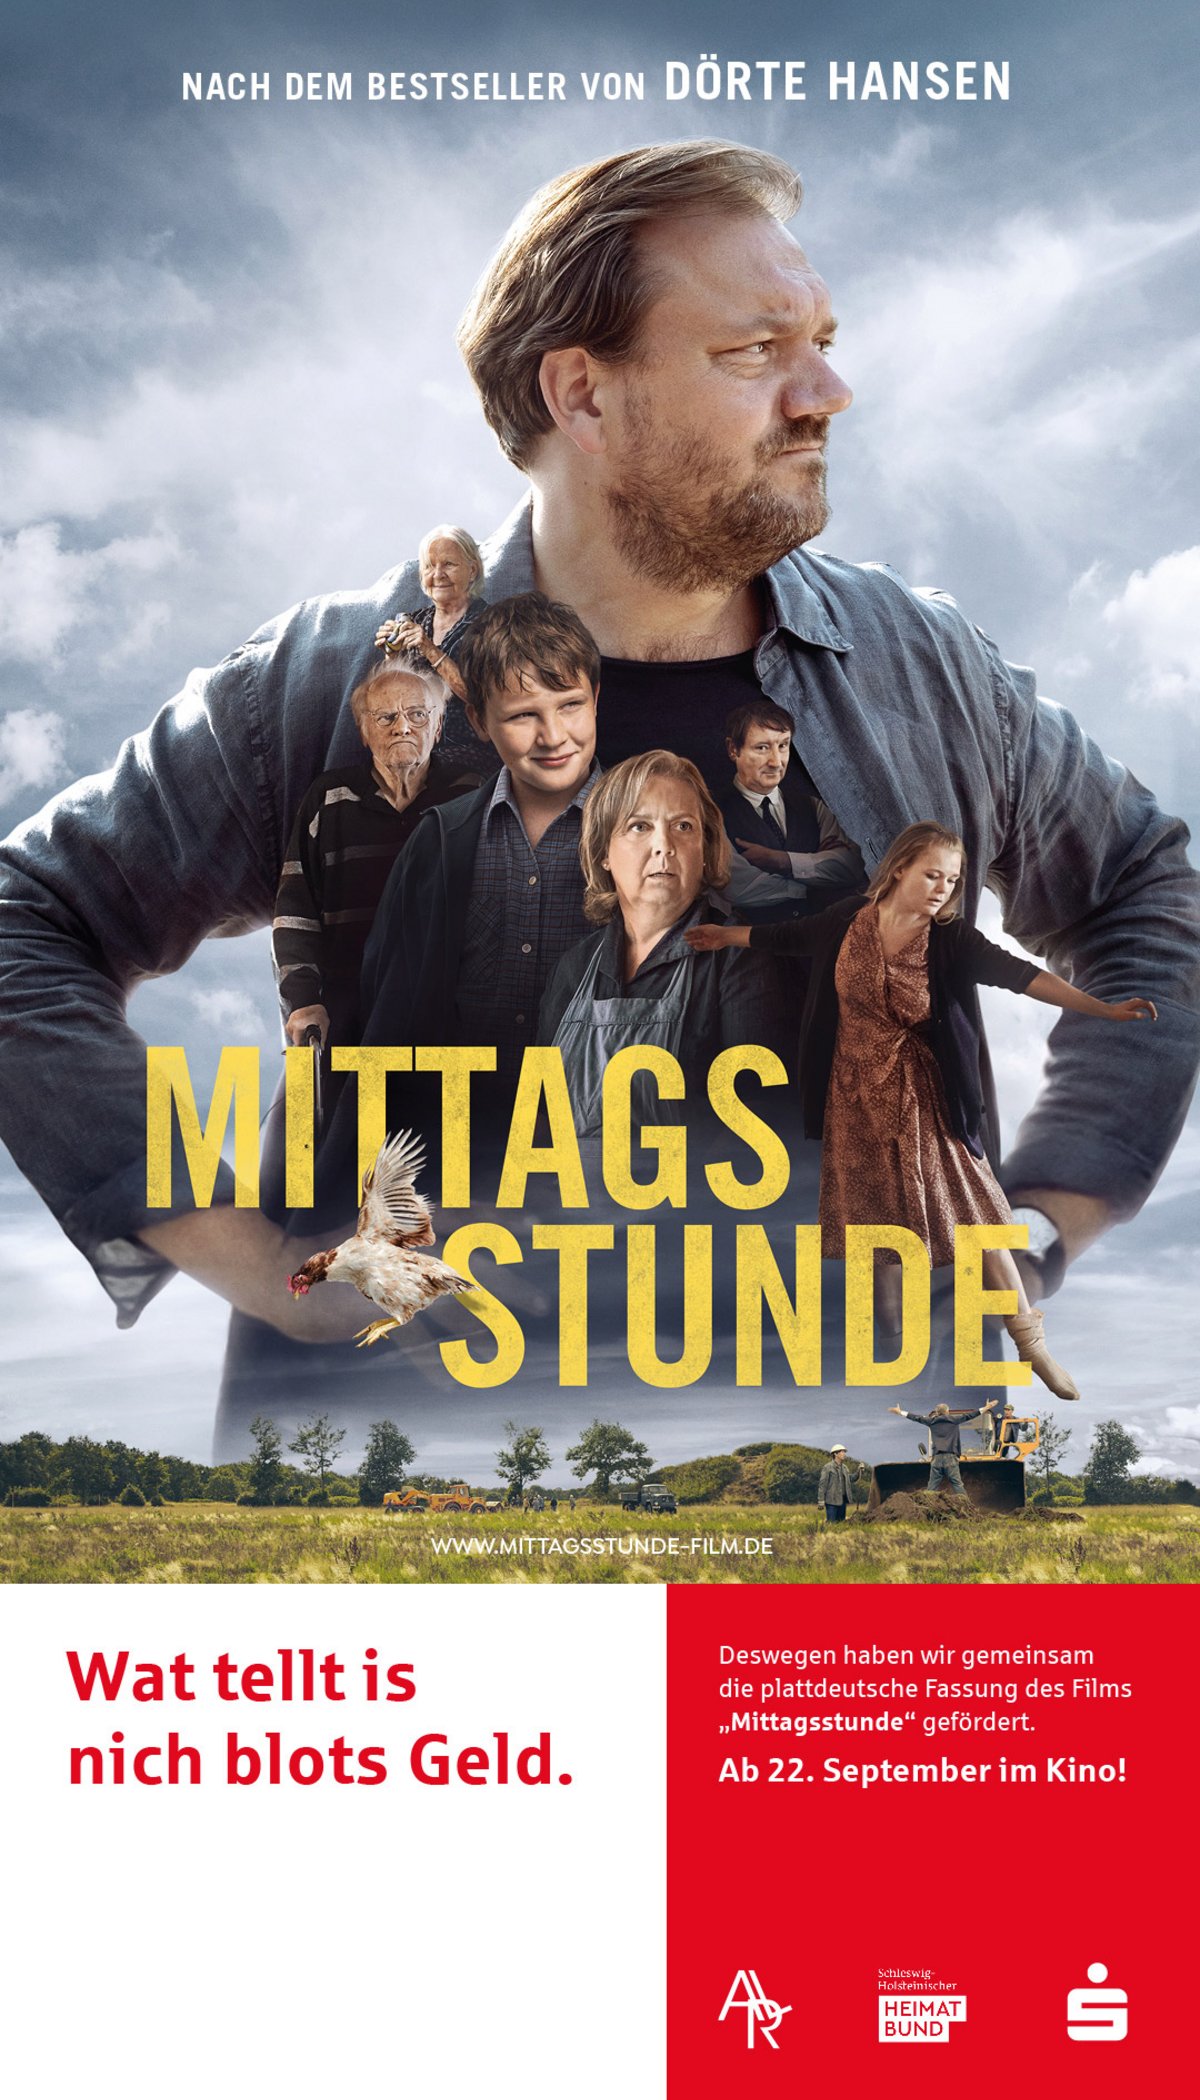 Großes Kino in plattdeutscher Sprache!